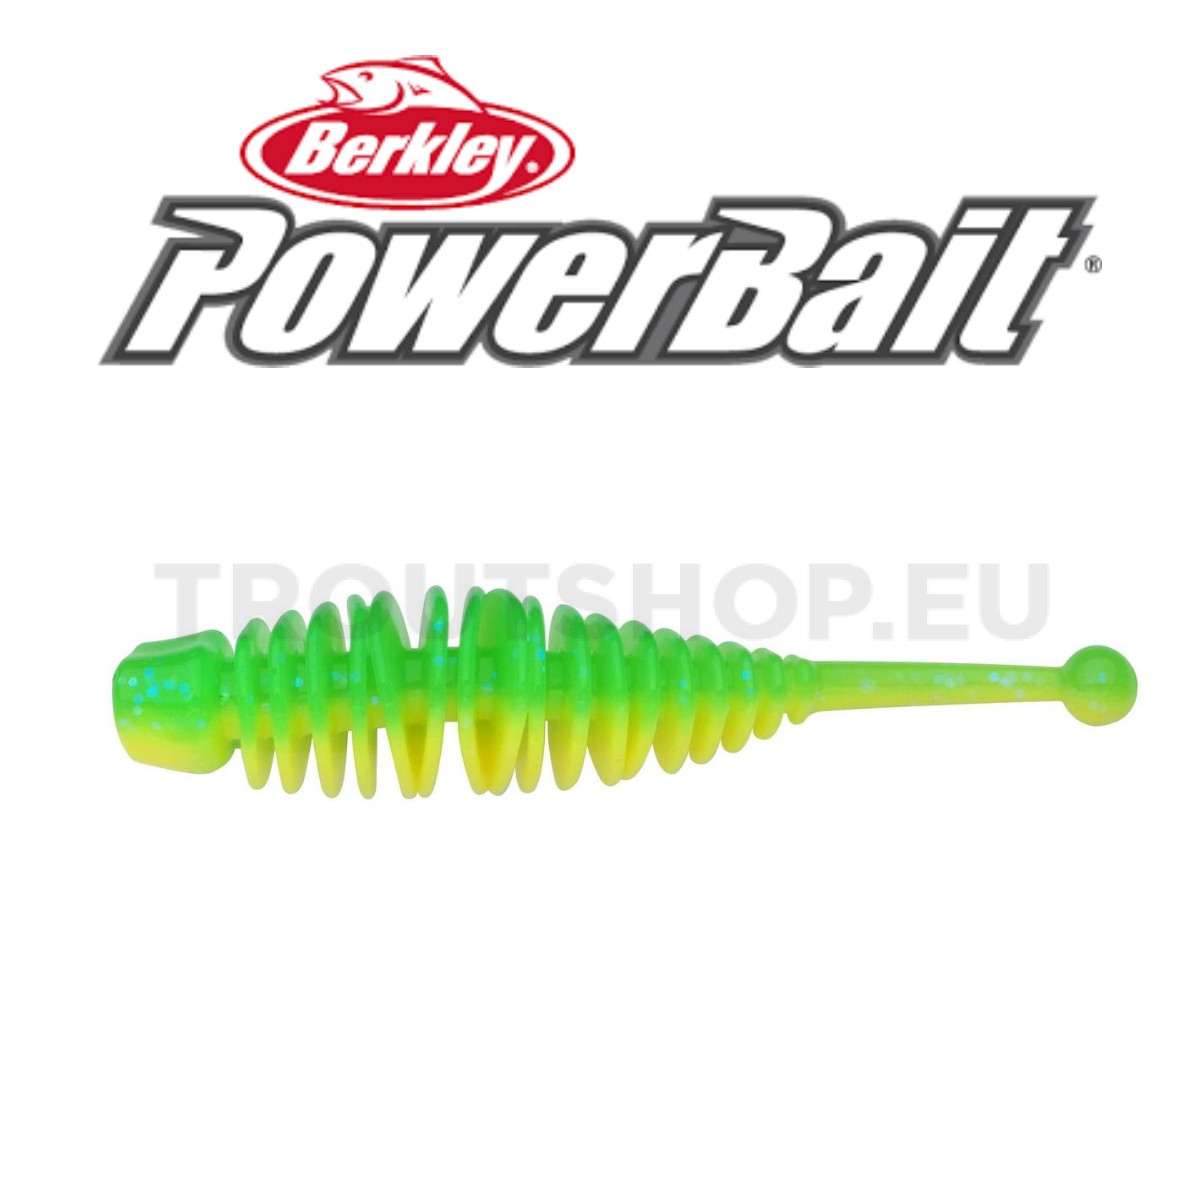 Berkley Powerbait Naiad – Garlic – 70mm – Green Yellow - TroutShop